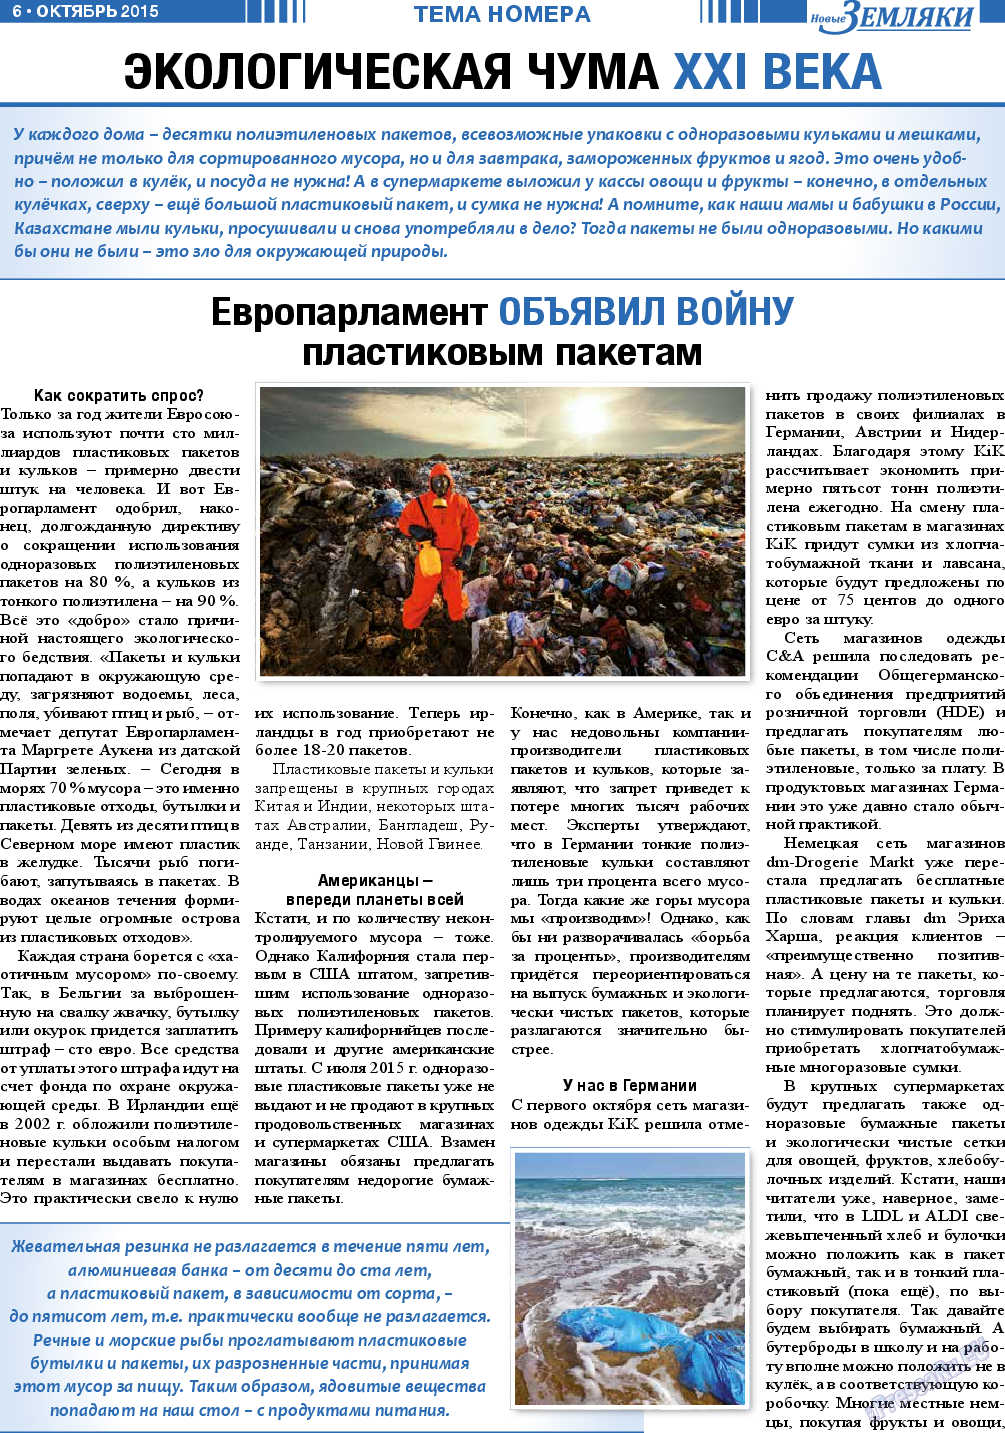 Новые Земляки, газета. 2015 №10 стр.6